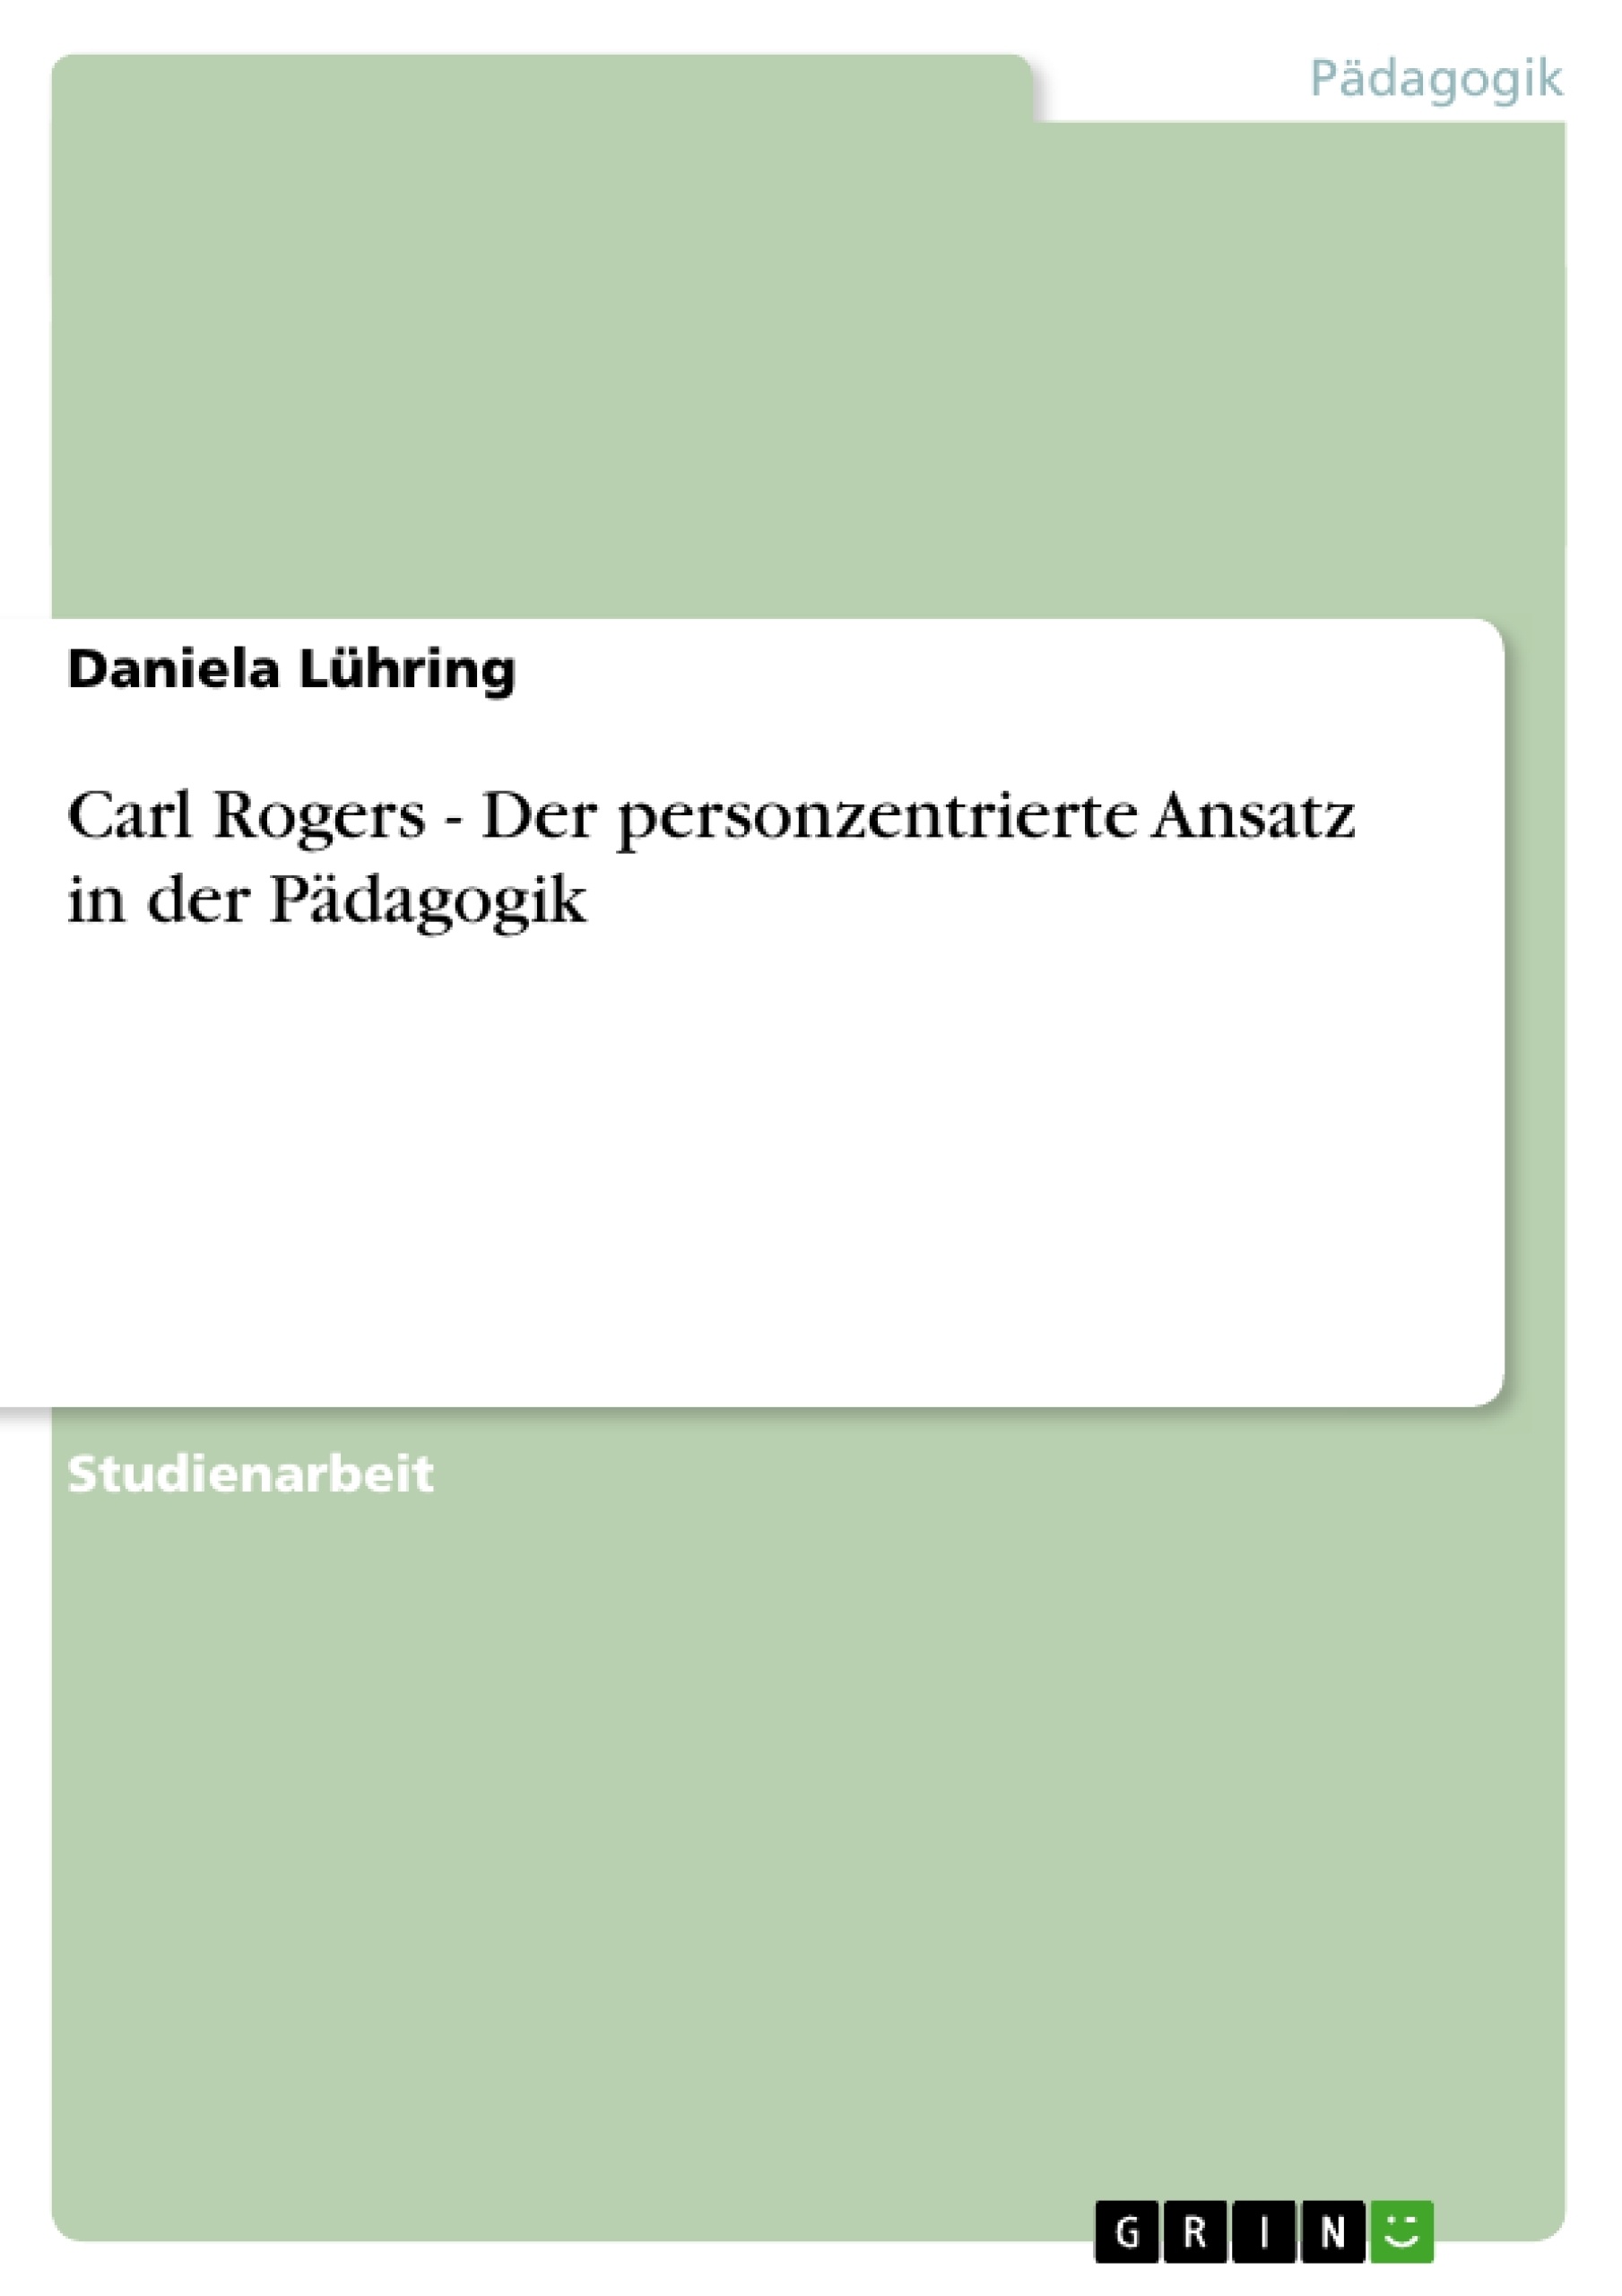 Title: Carl Rogers - Der personzentrierte Ansatz in der Pädagogik